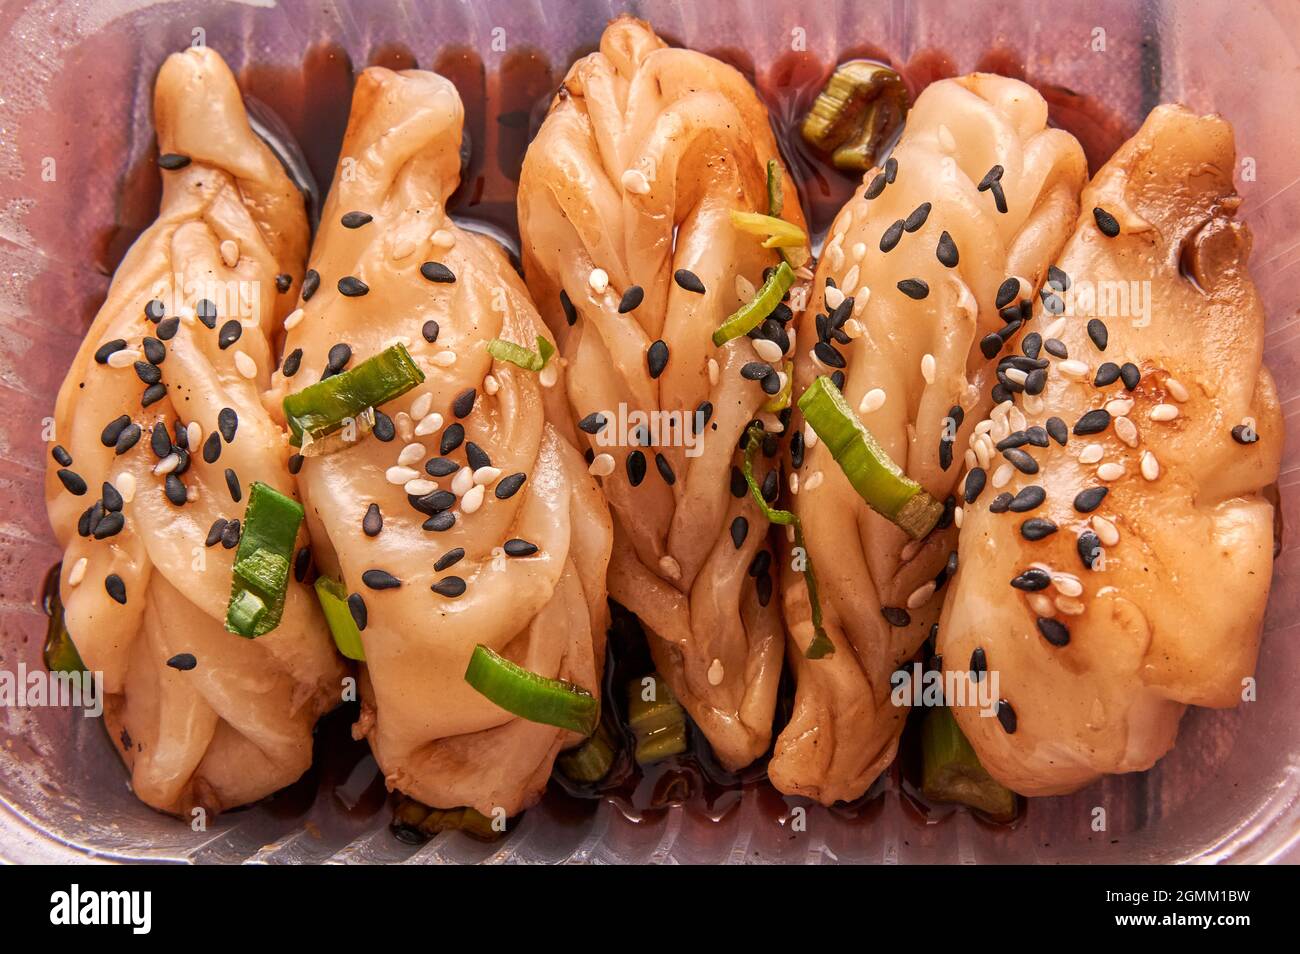 cinq gyozas. boulettes chinoises cuites à la vapeur décorées de graines sur le dessus et de sauce soja. Cuisine asiatique traditionnelle. Horizontale. Vue aérienne Banque D'Images